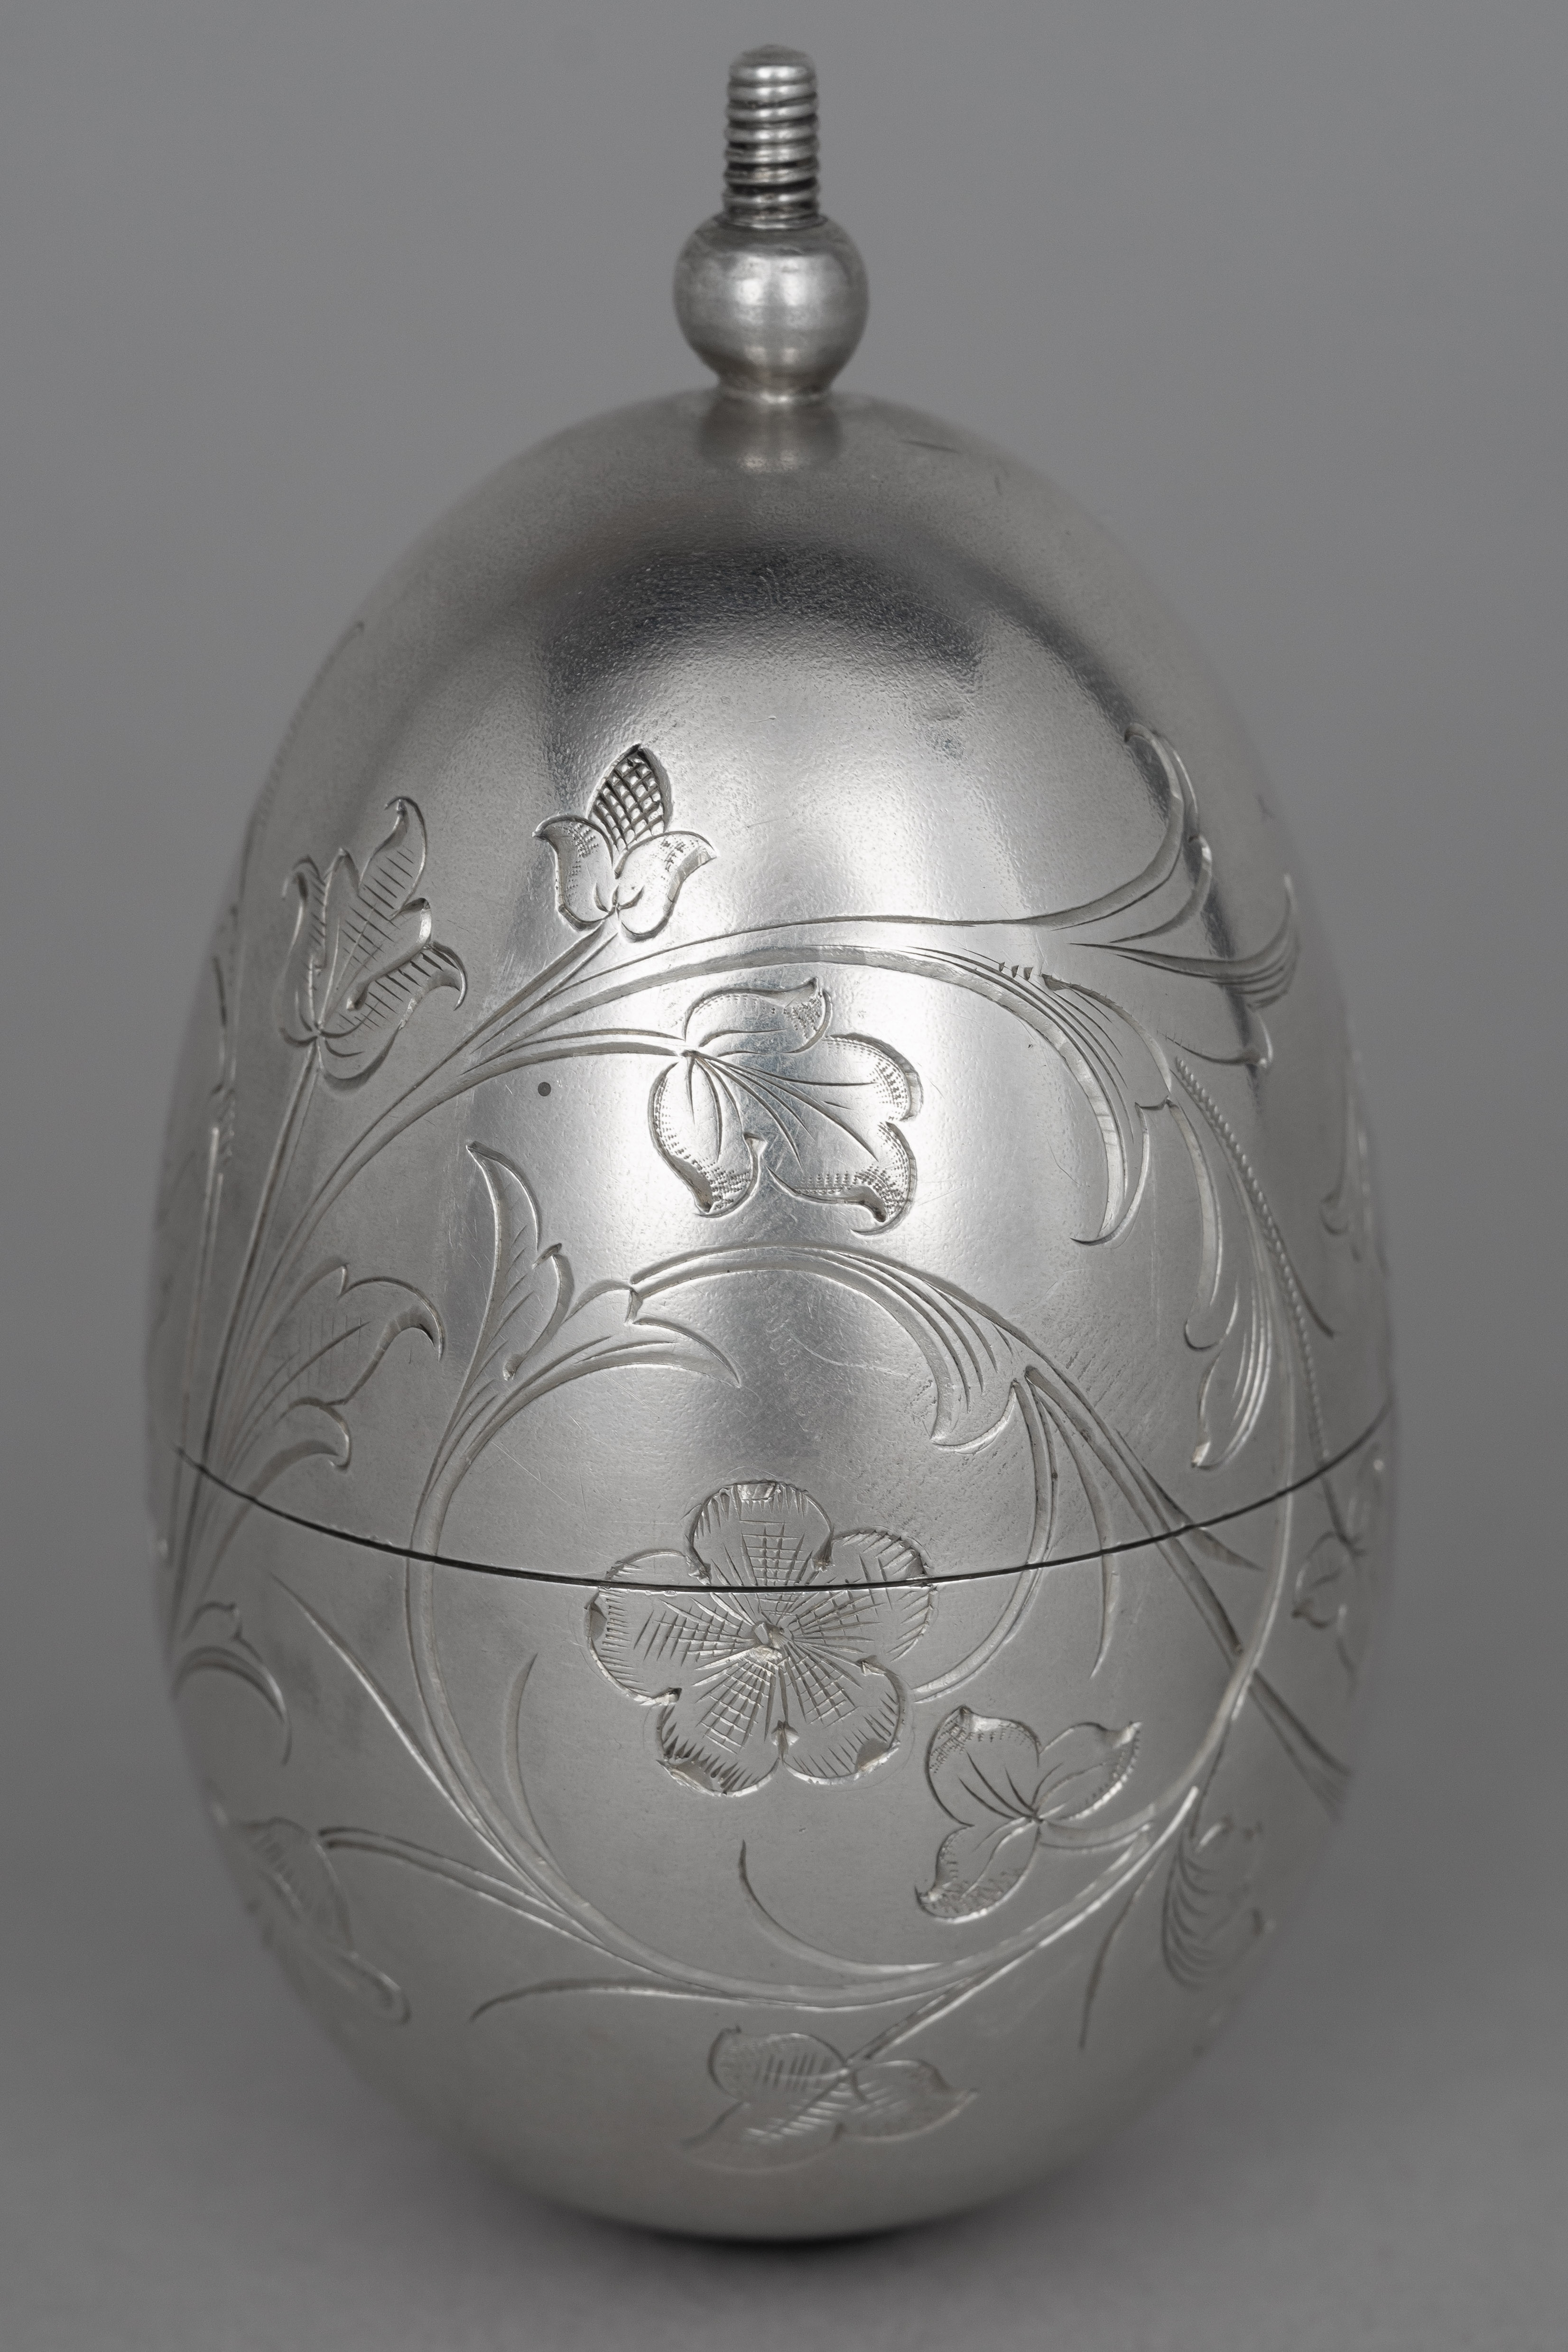 Пасхальное яйцо - трансформер в рюмку.<br>Россия, Санкт-Петербург, мастер «J.A.», 1880-1890 годы.